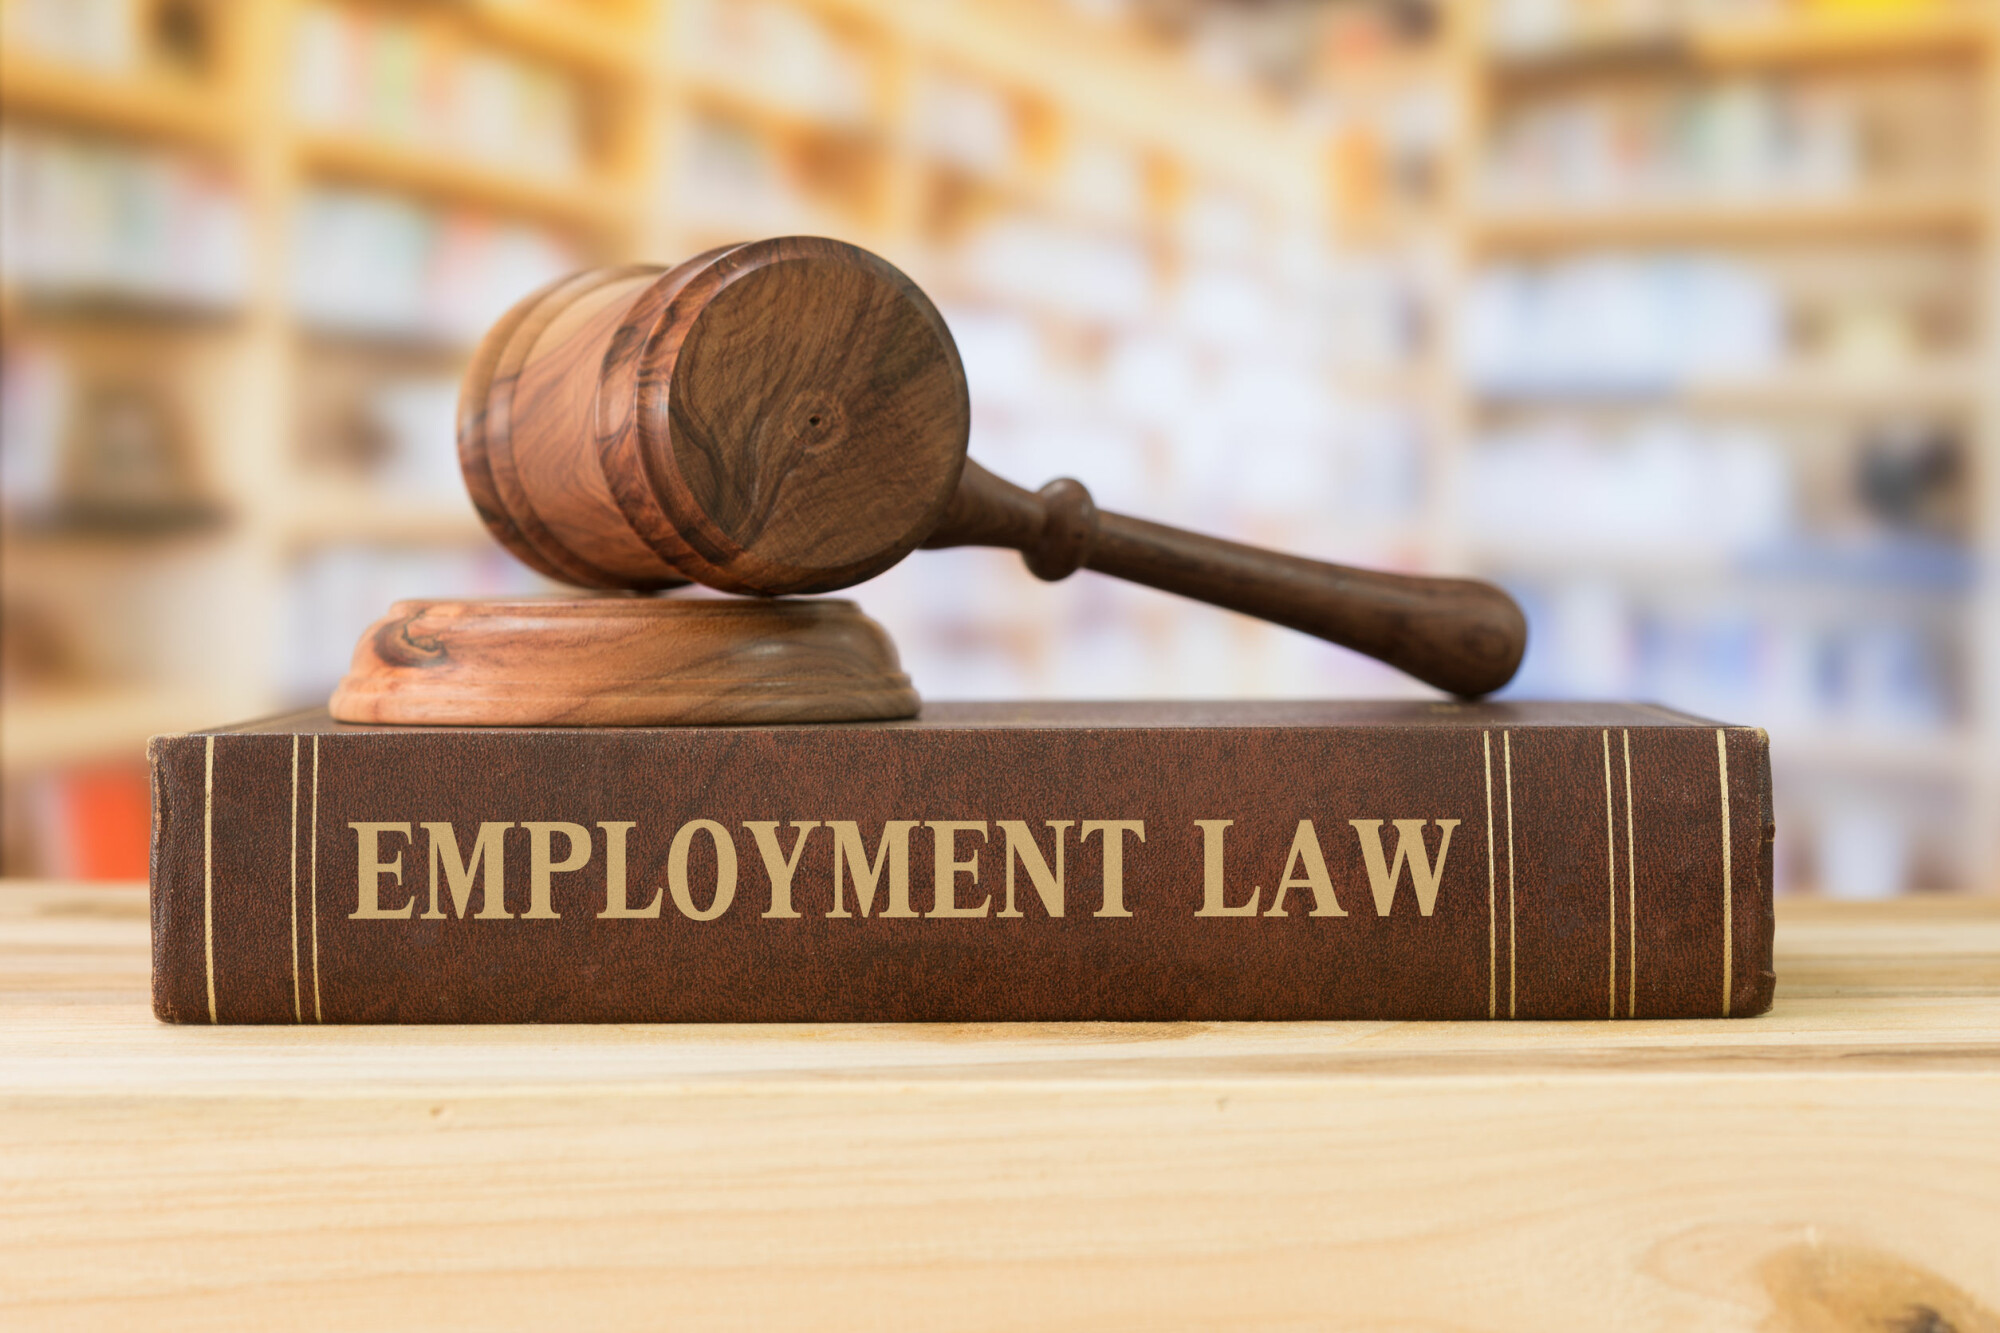 Employment Law & Gavel